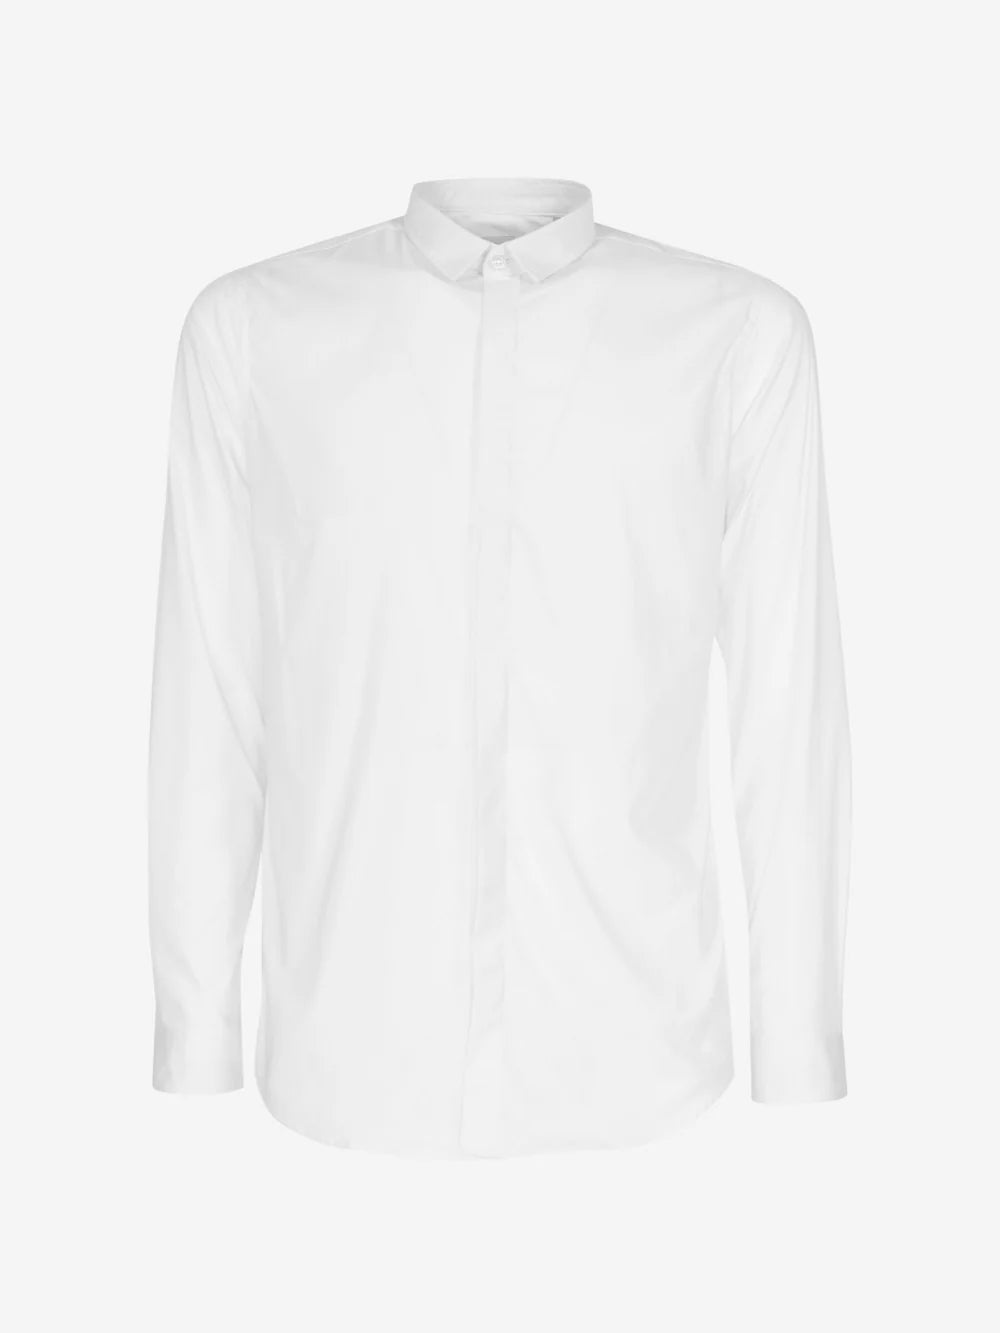 Marsem White Viscose Shirt 